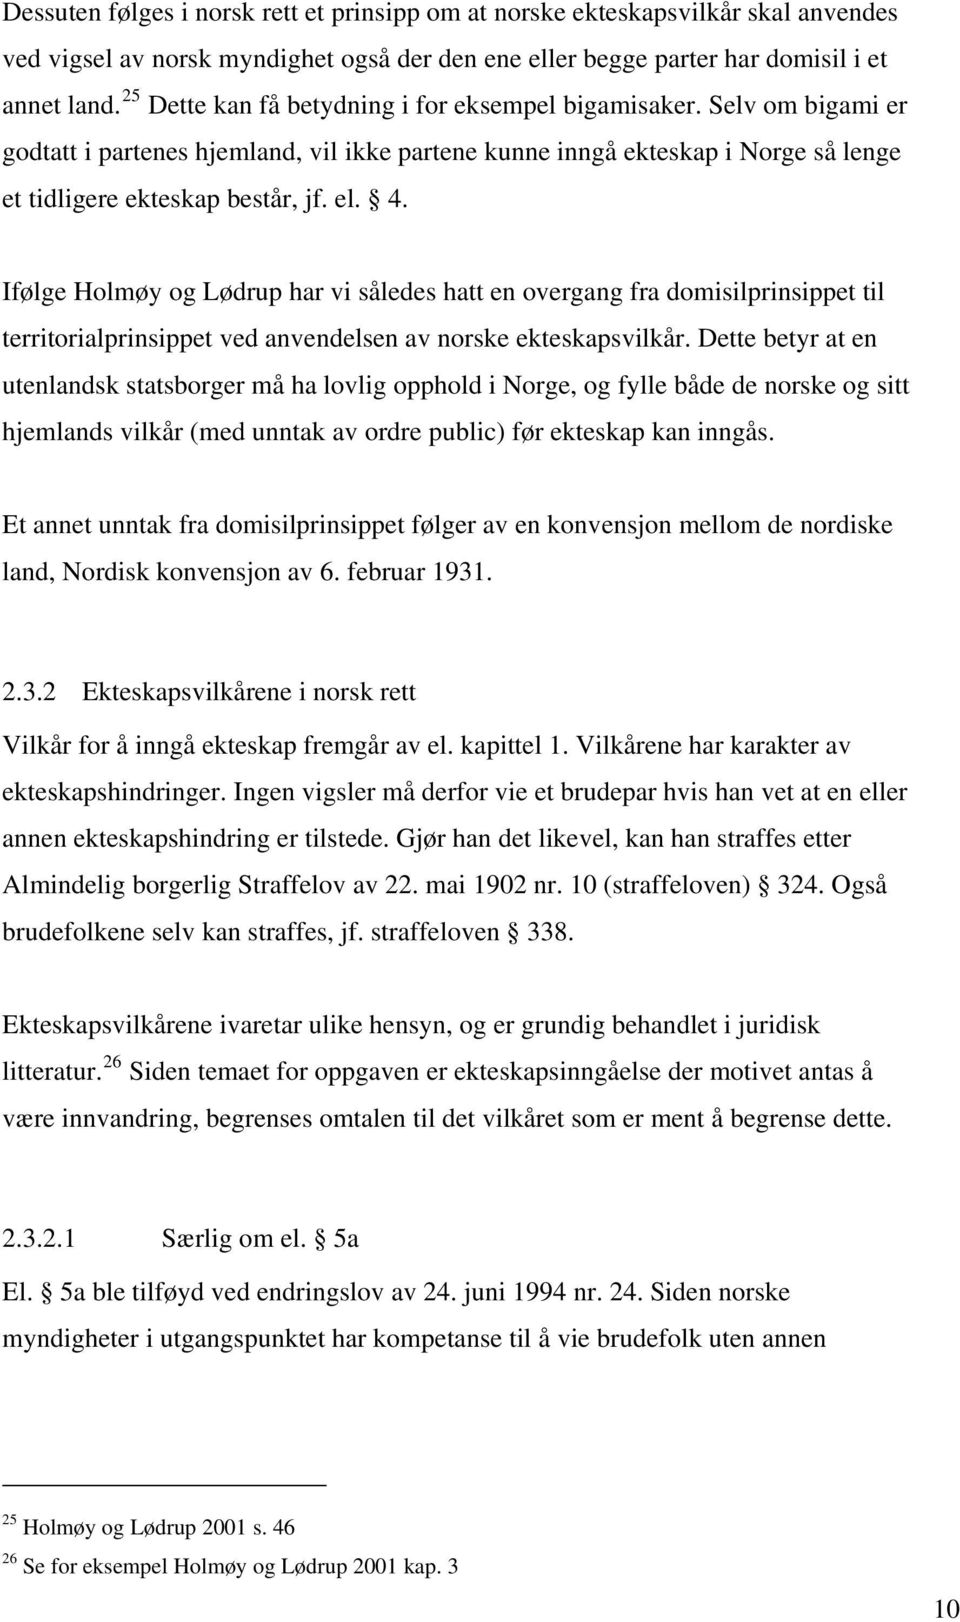 Ifølge Holmøy og Lødrup har vi således hatt en overgang fra domisilprinsippet til territorialprinsippet ved anvendelsen av norske ekteskapsvilkår.